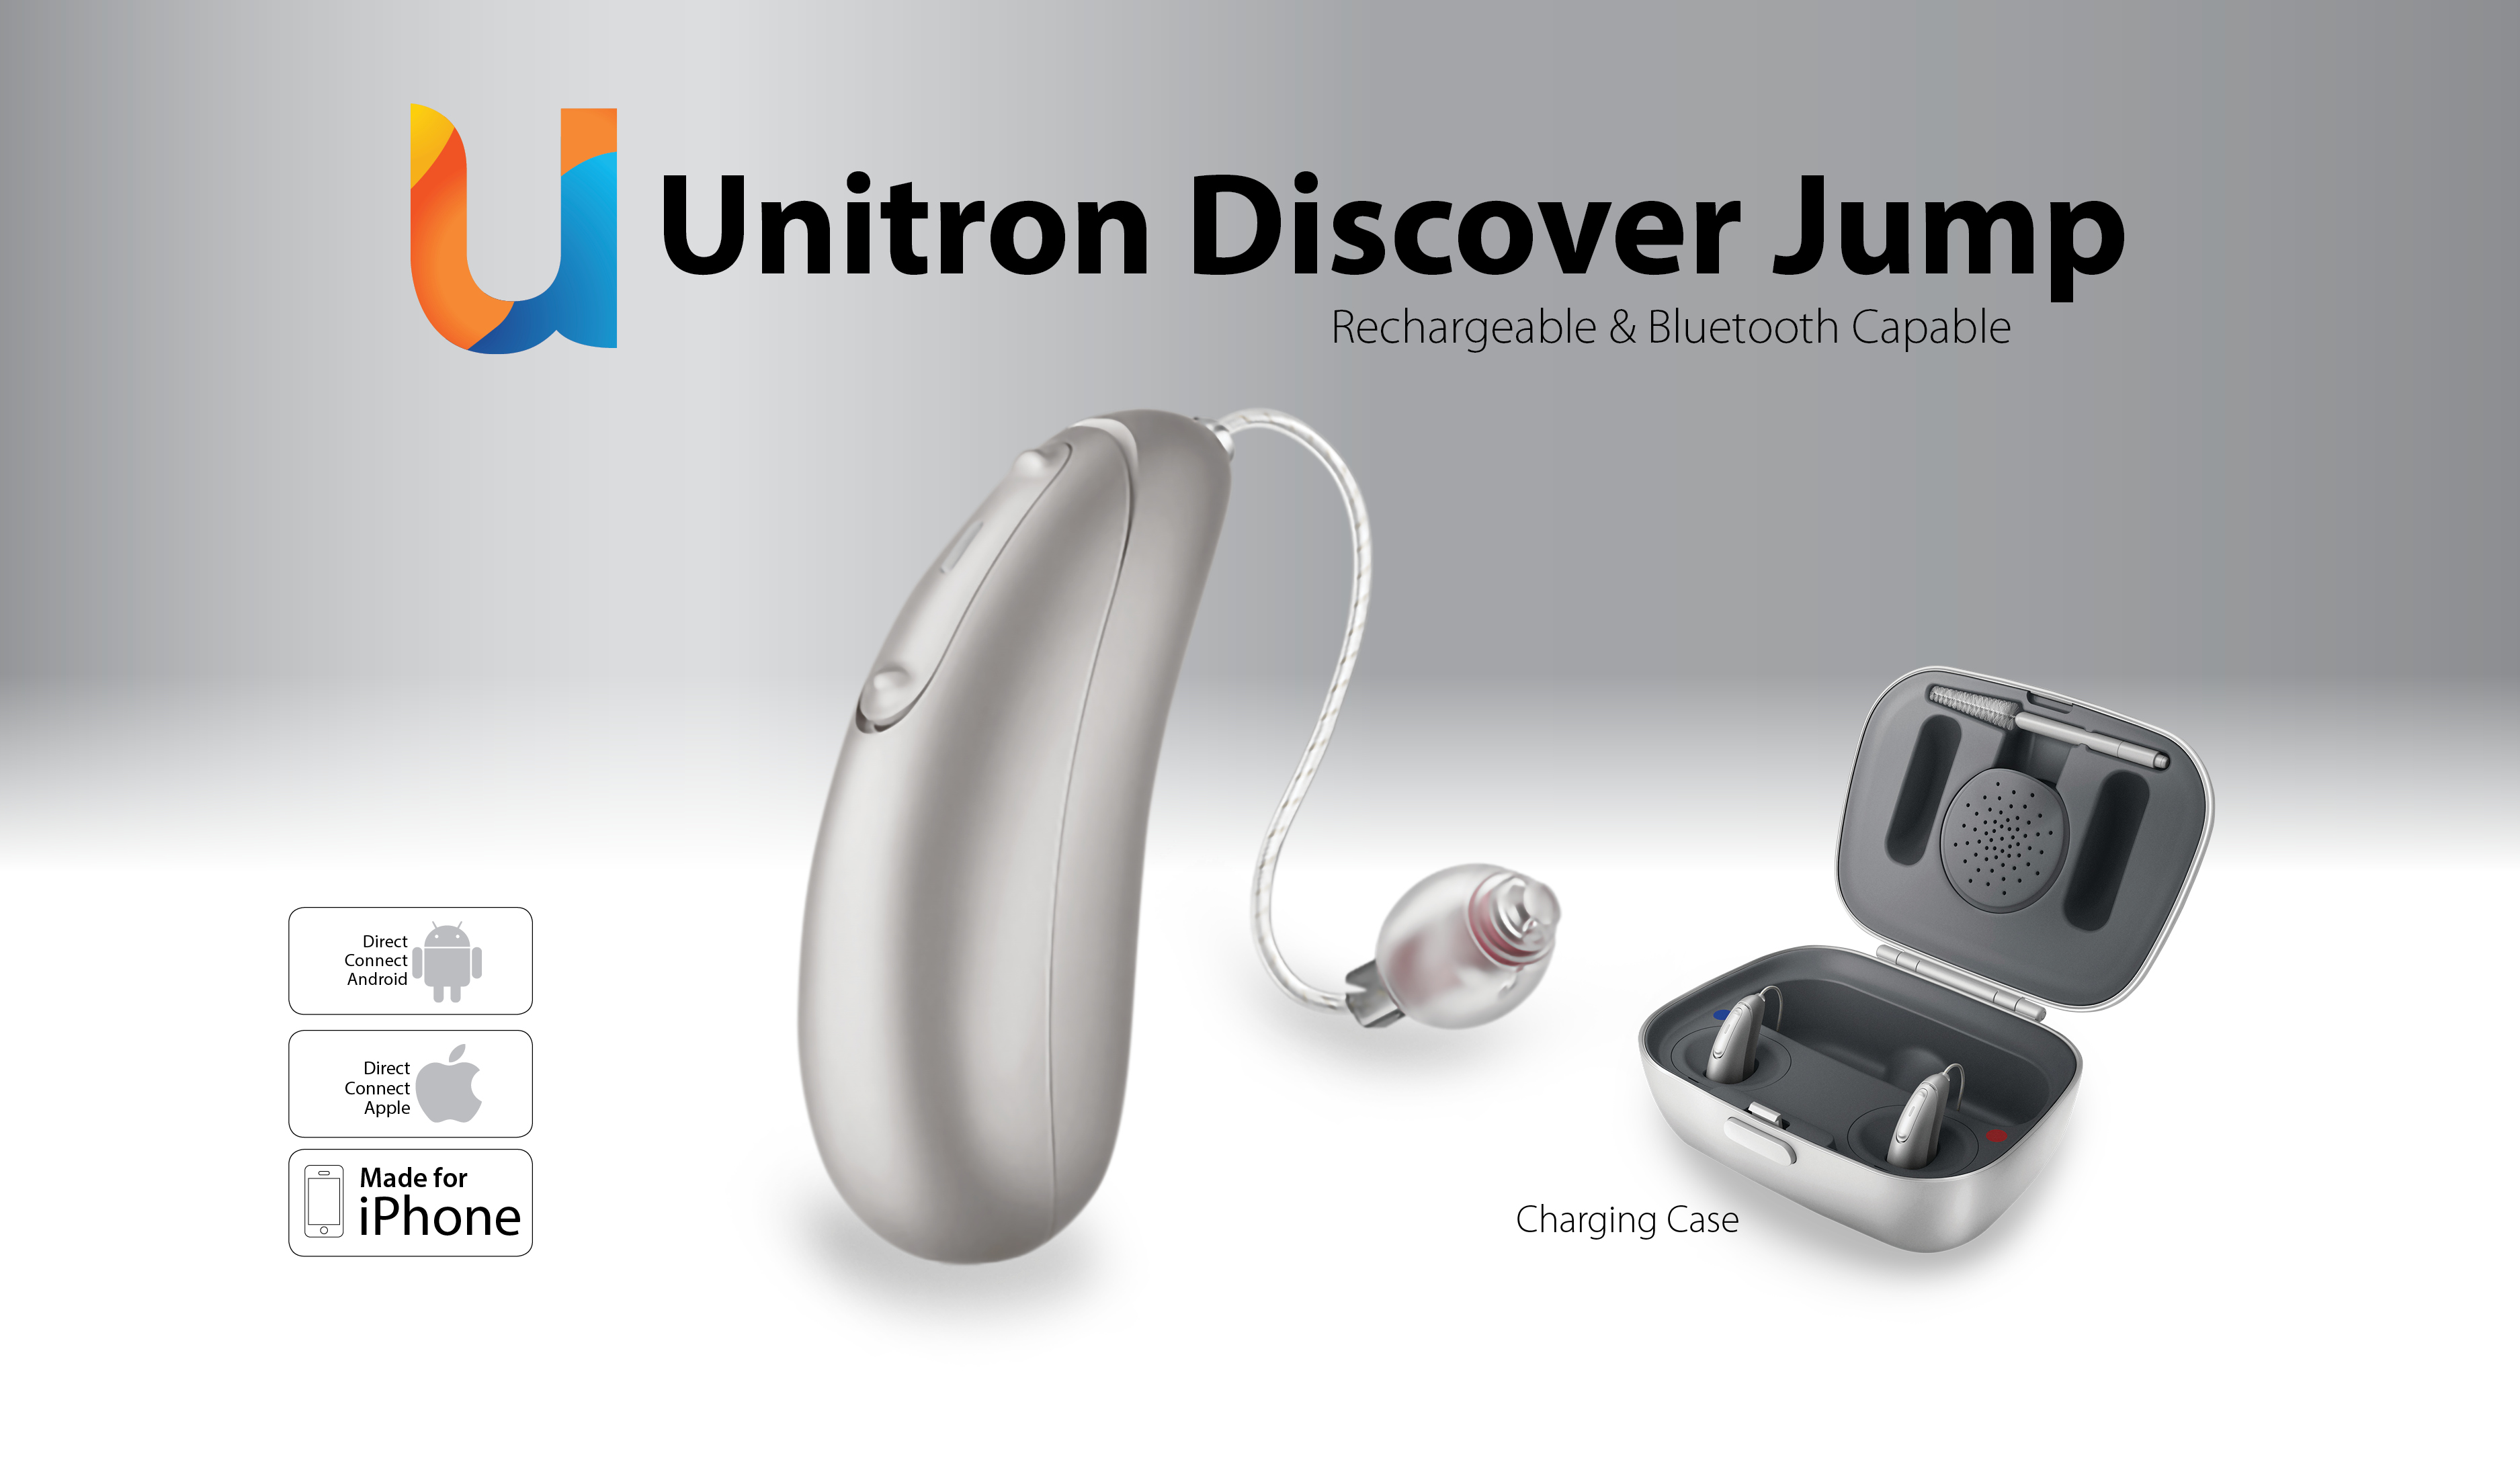 Disciver D Moxi Jump R appareils auditifs bluetooth rechargeable Unitron